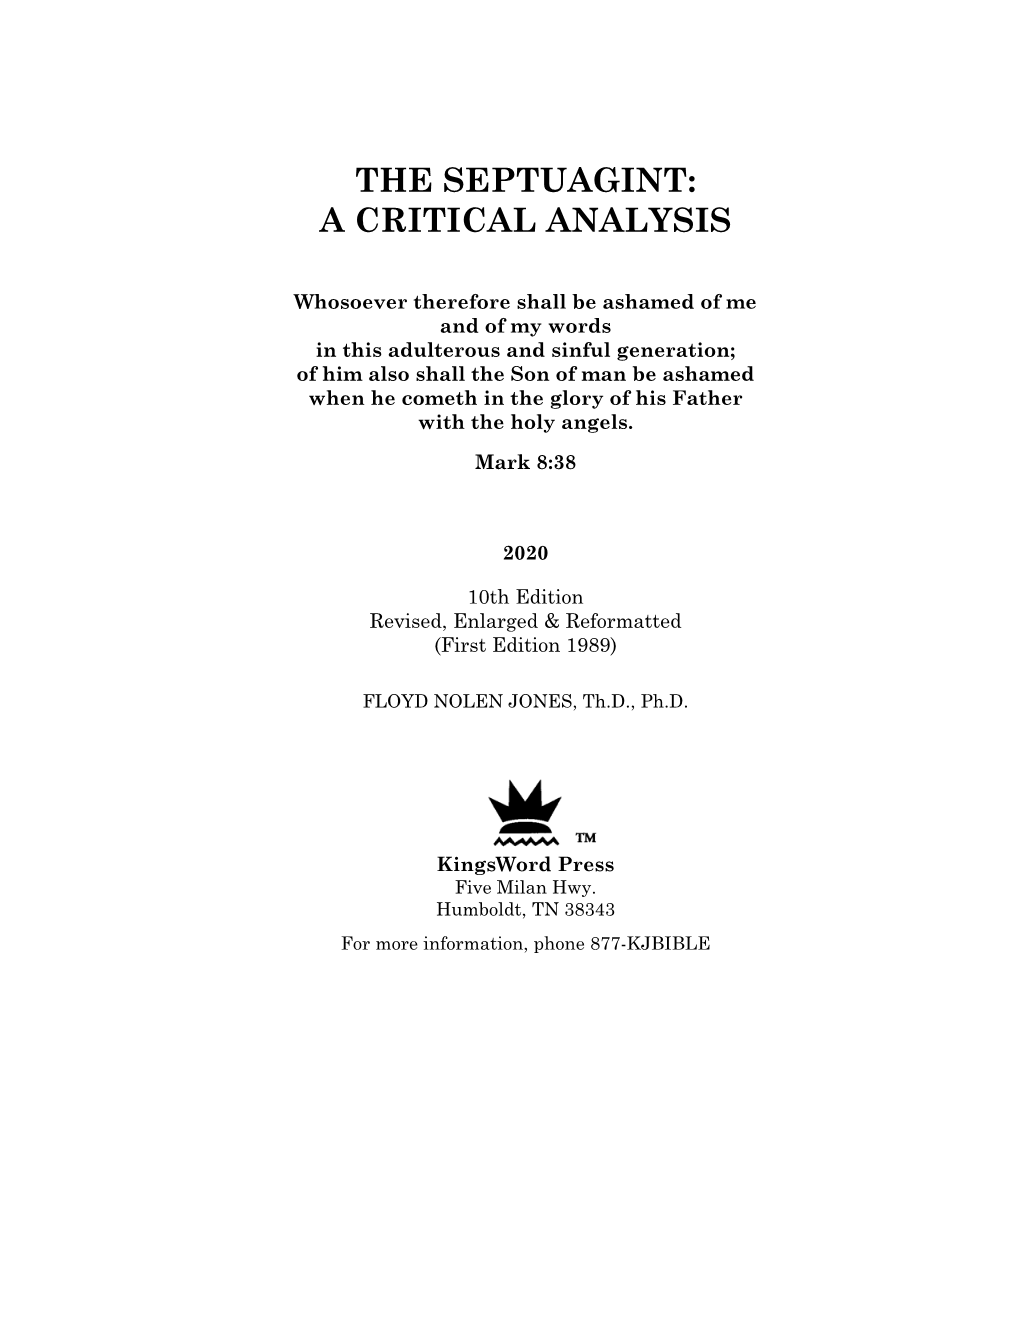 The Septuagint: a Critical Analysis, Floyd Nolen Jones, Th.D., Ph.D